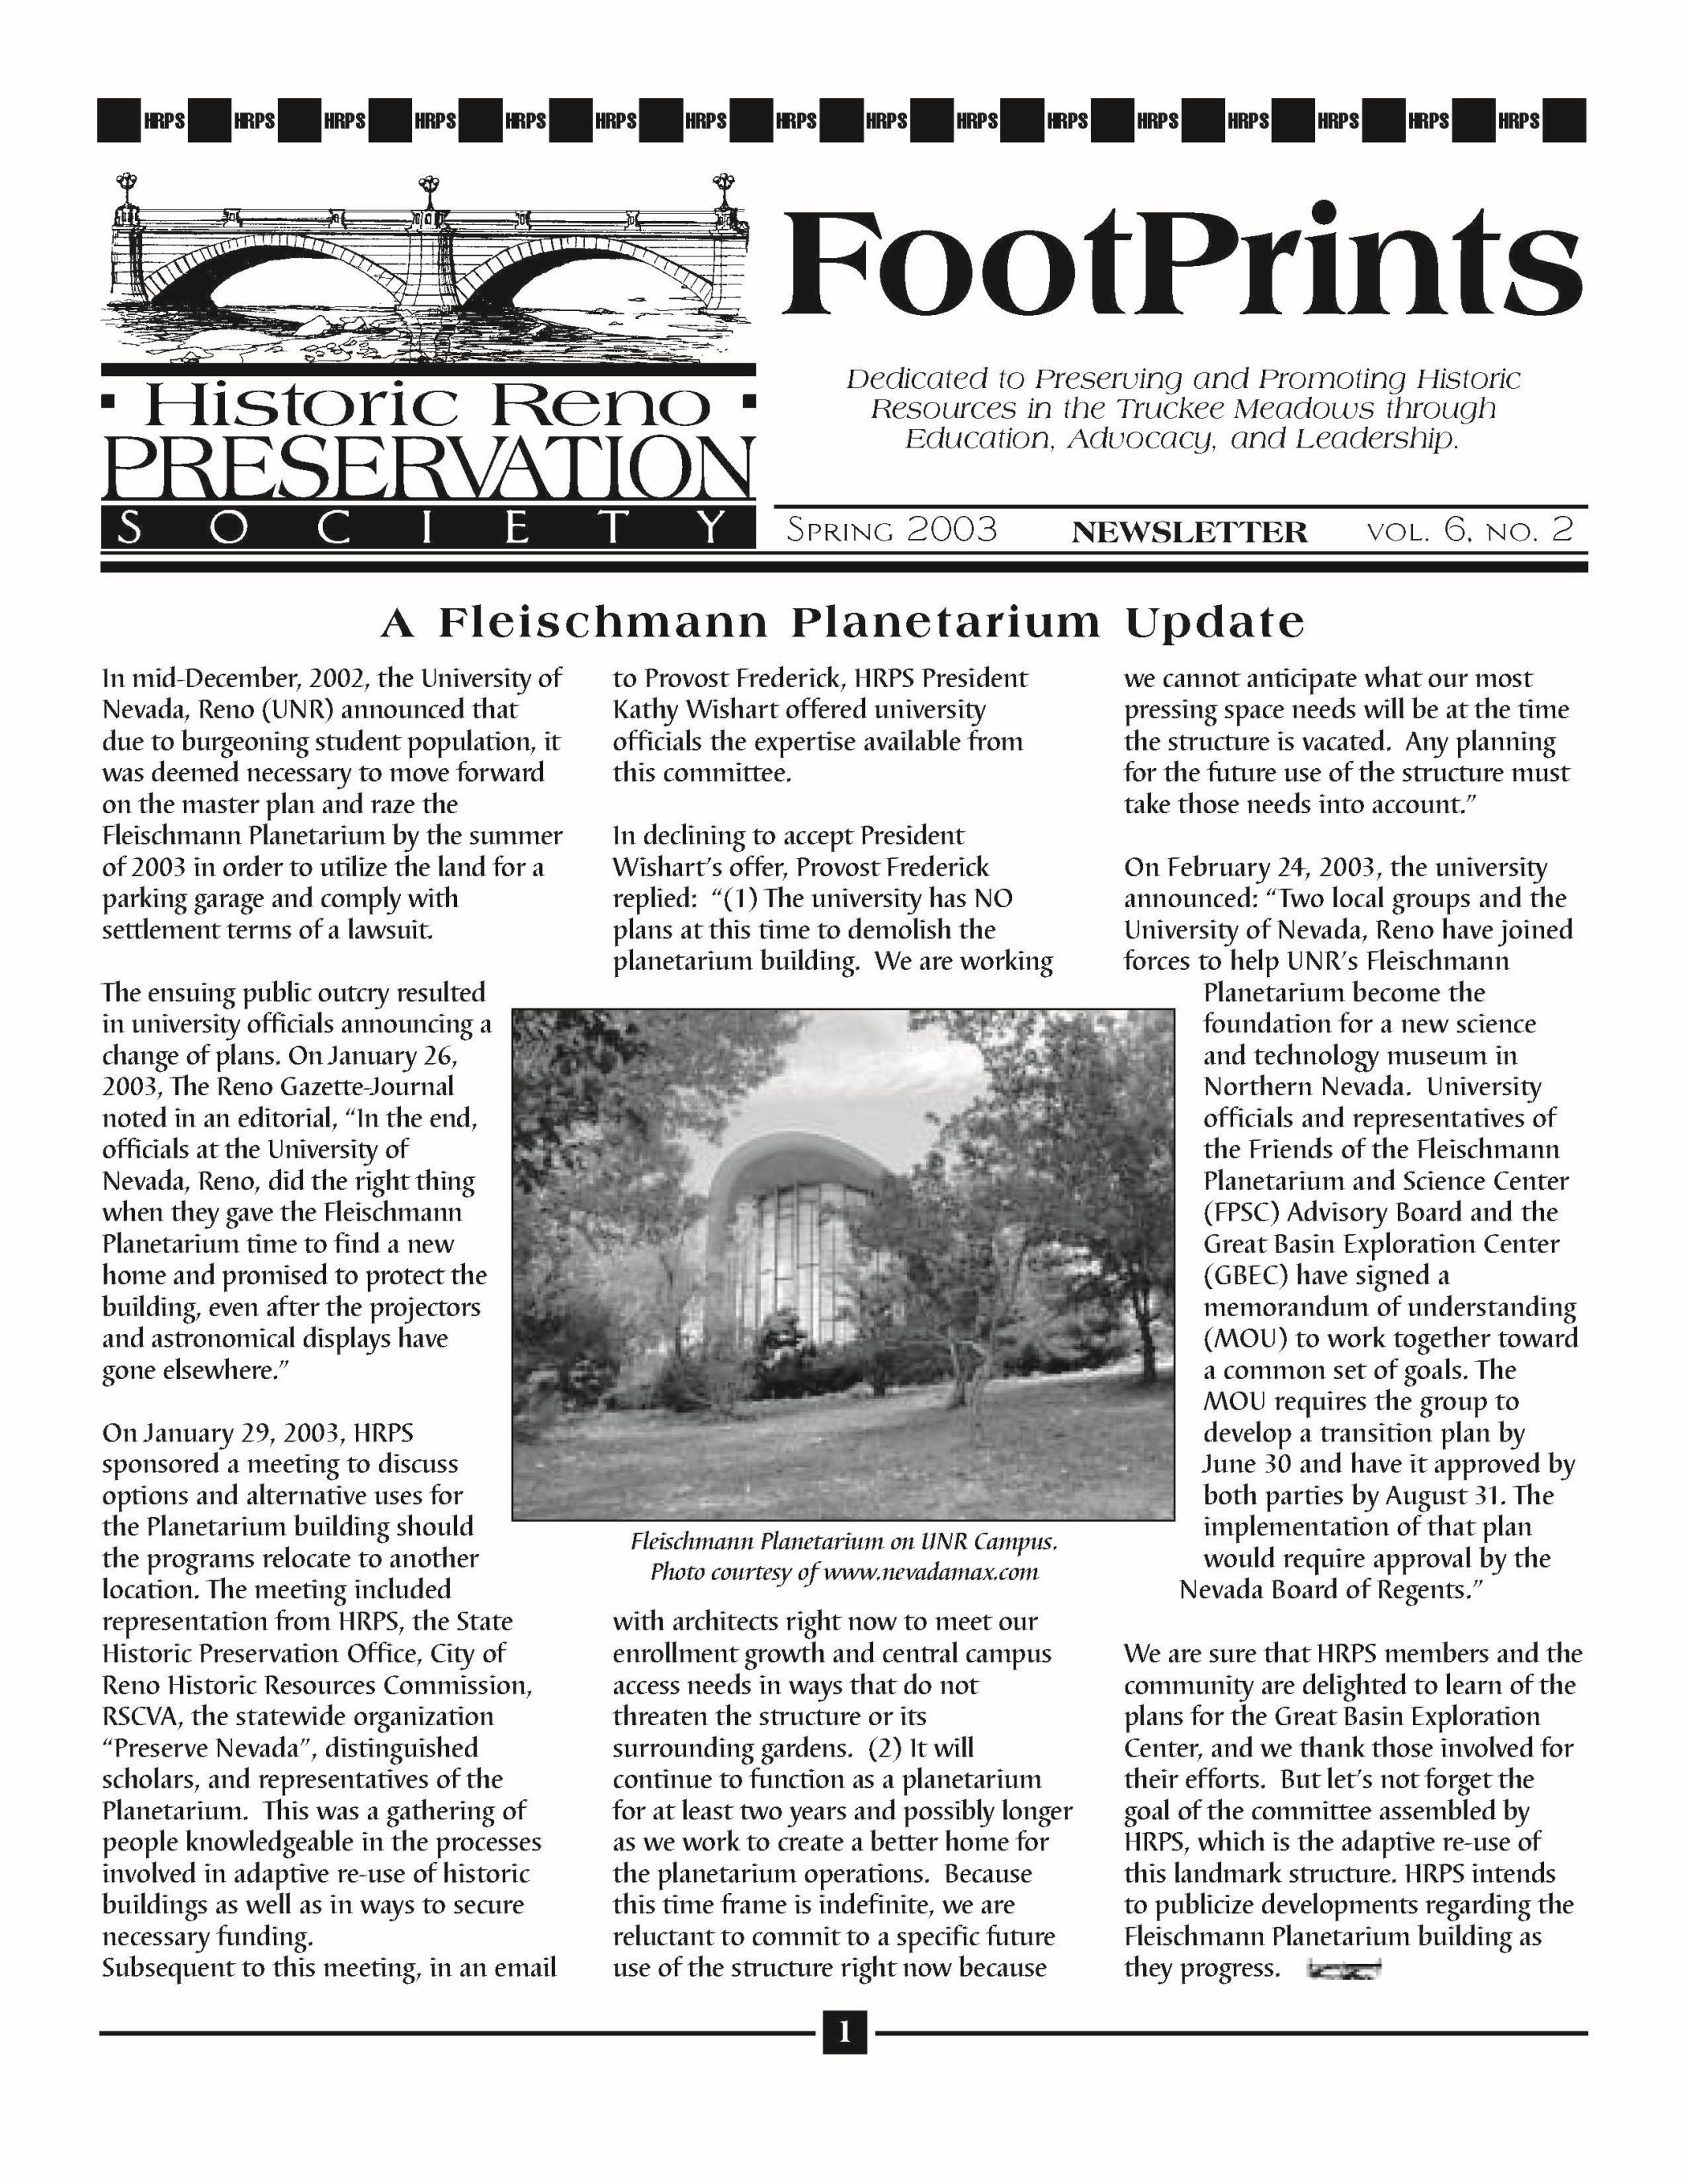 FootPrints Volume 6, Number 2, Spring 2003